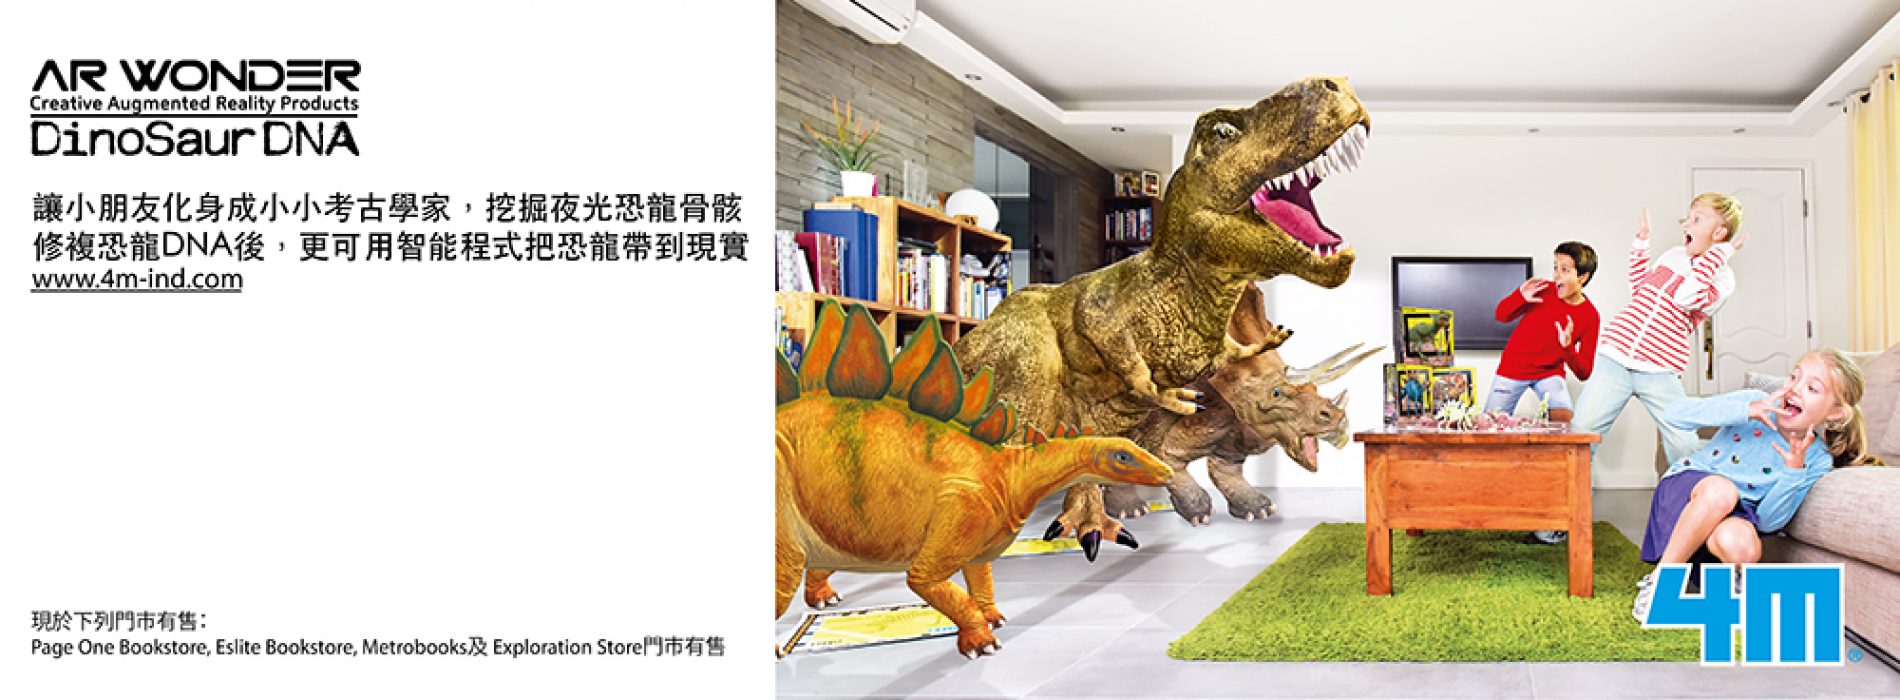 免費得‧國際益智玩具品牌4M – AR Wonder恐龍產品